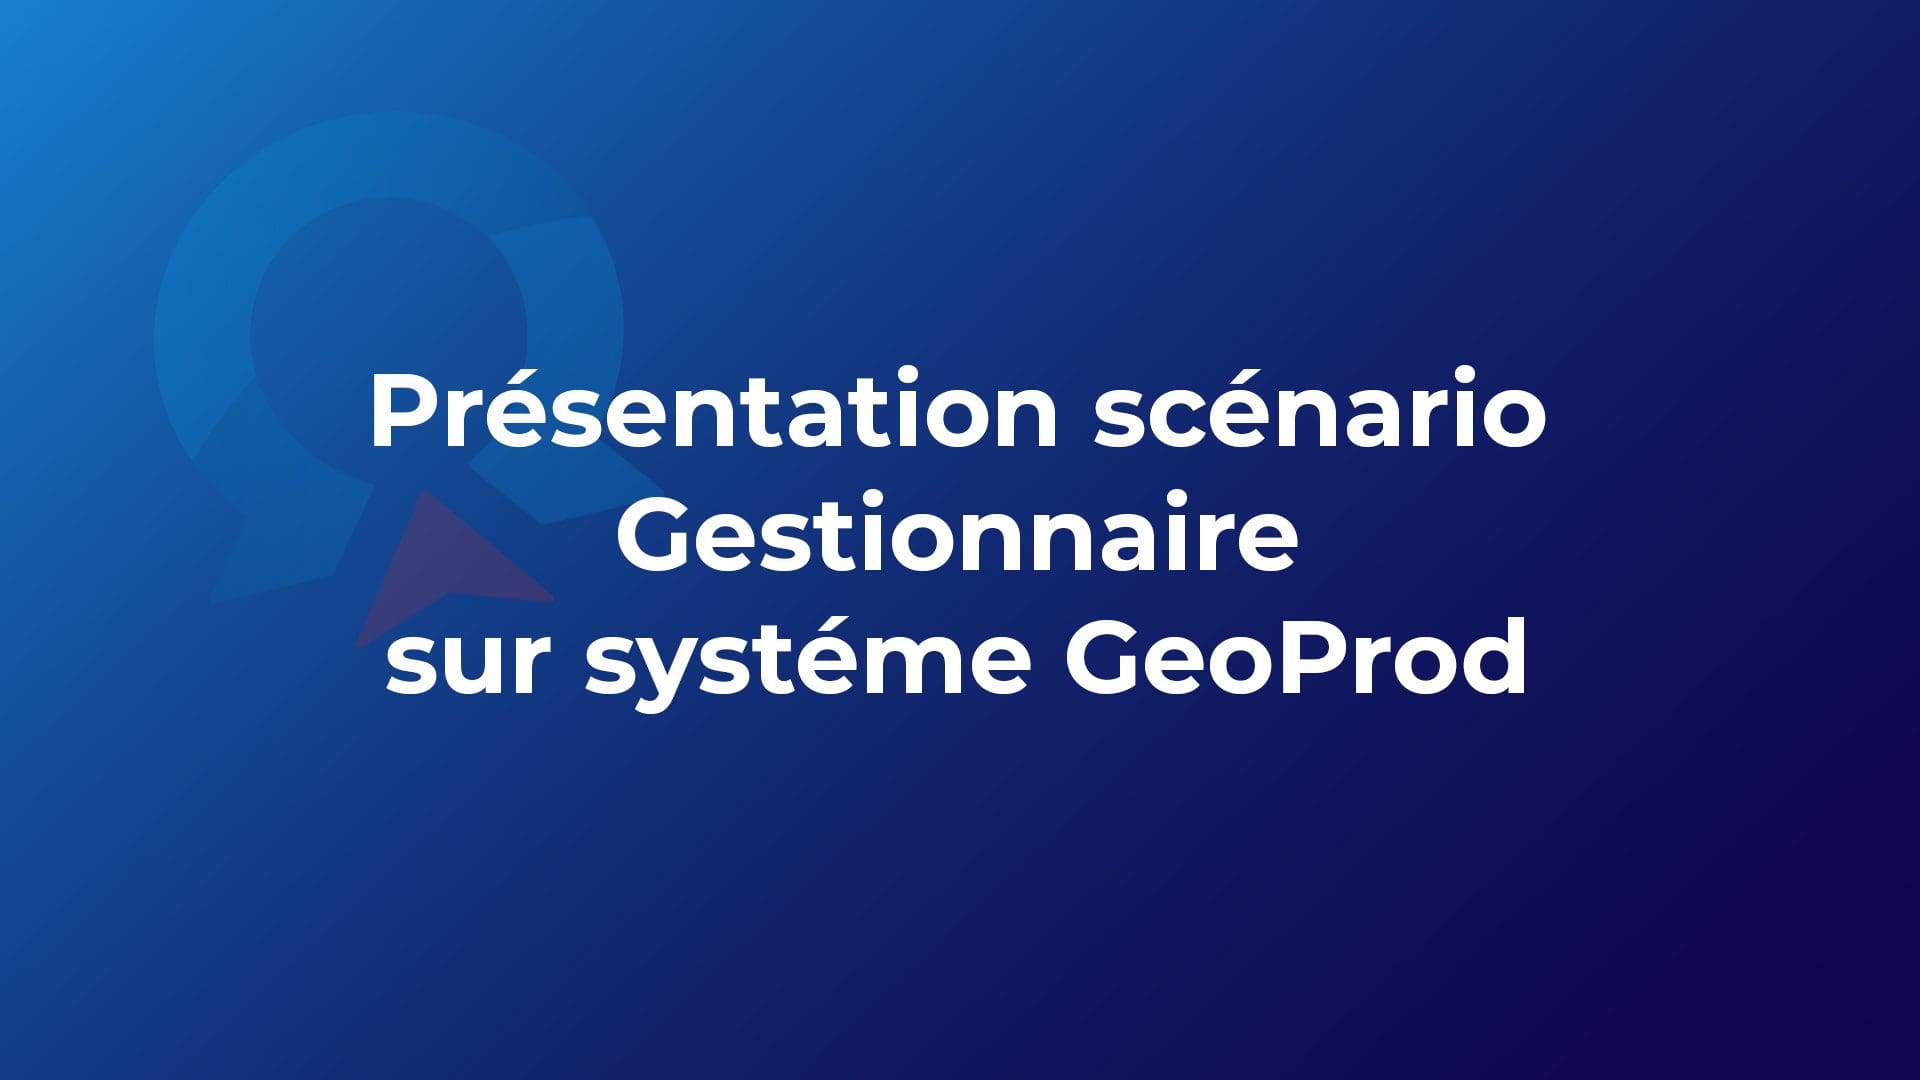 GeoProd - Présentation scénario Gestionnaire